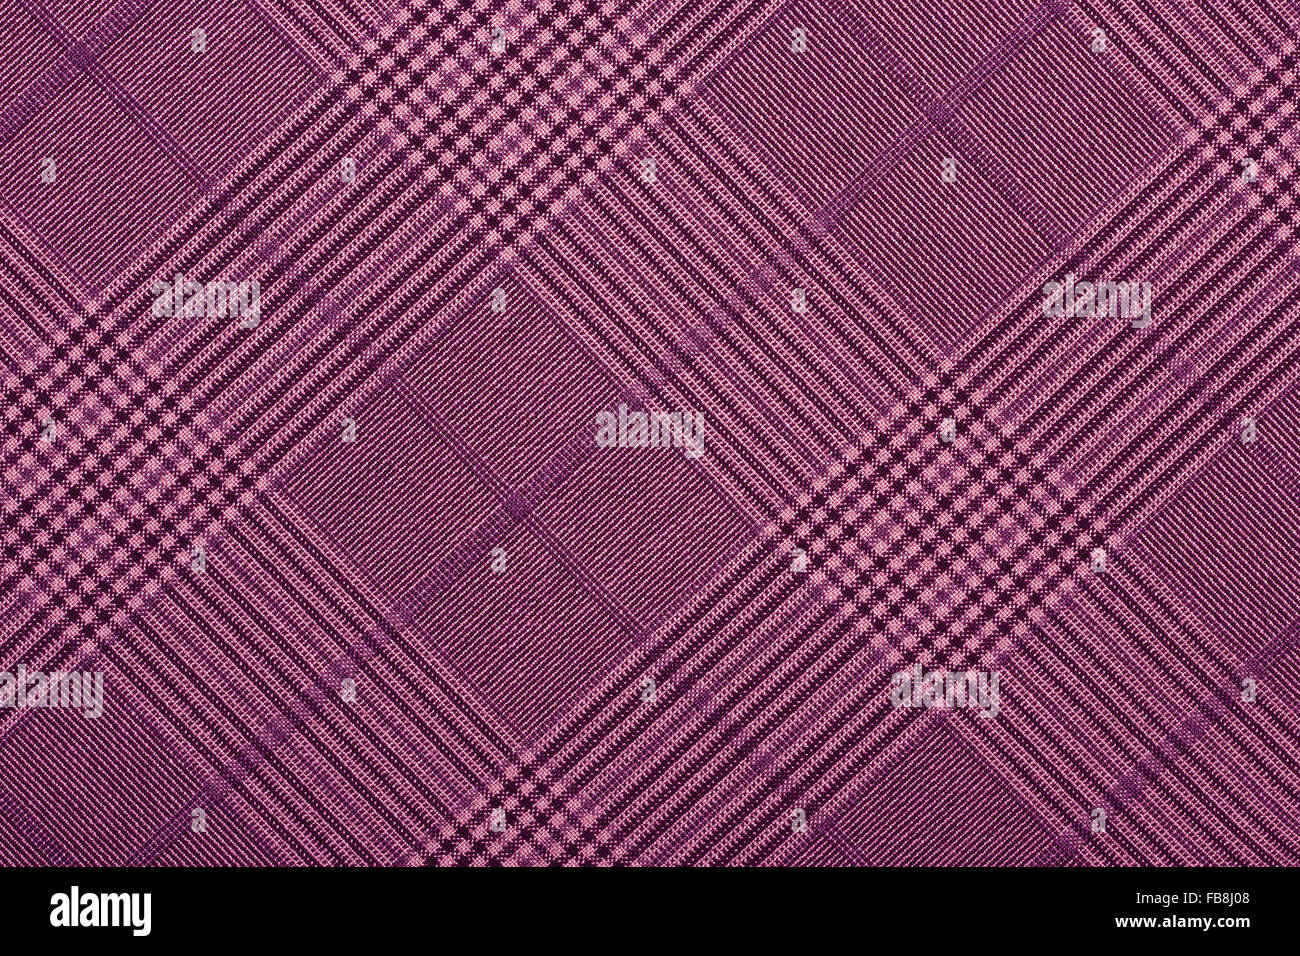 Material púrpura en patrones geométricos, un fondo o textura Foto de stock